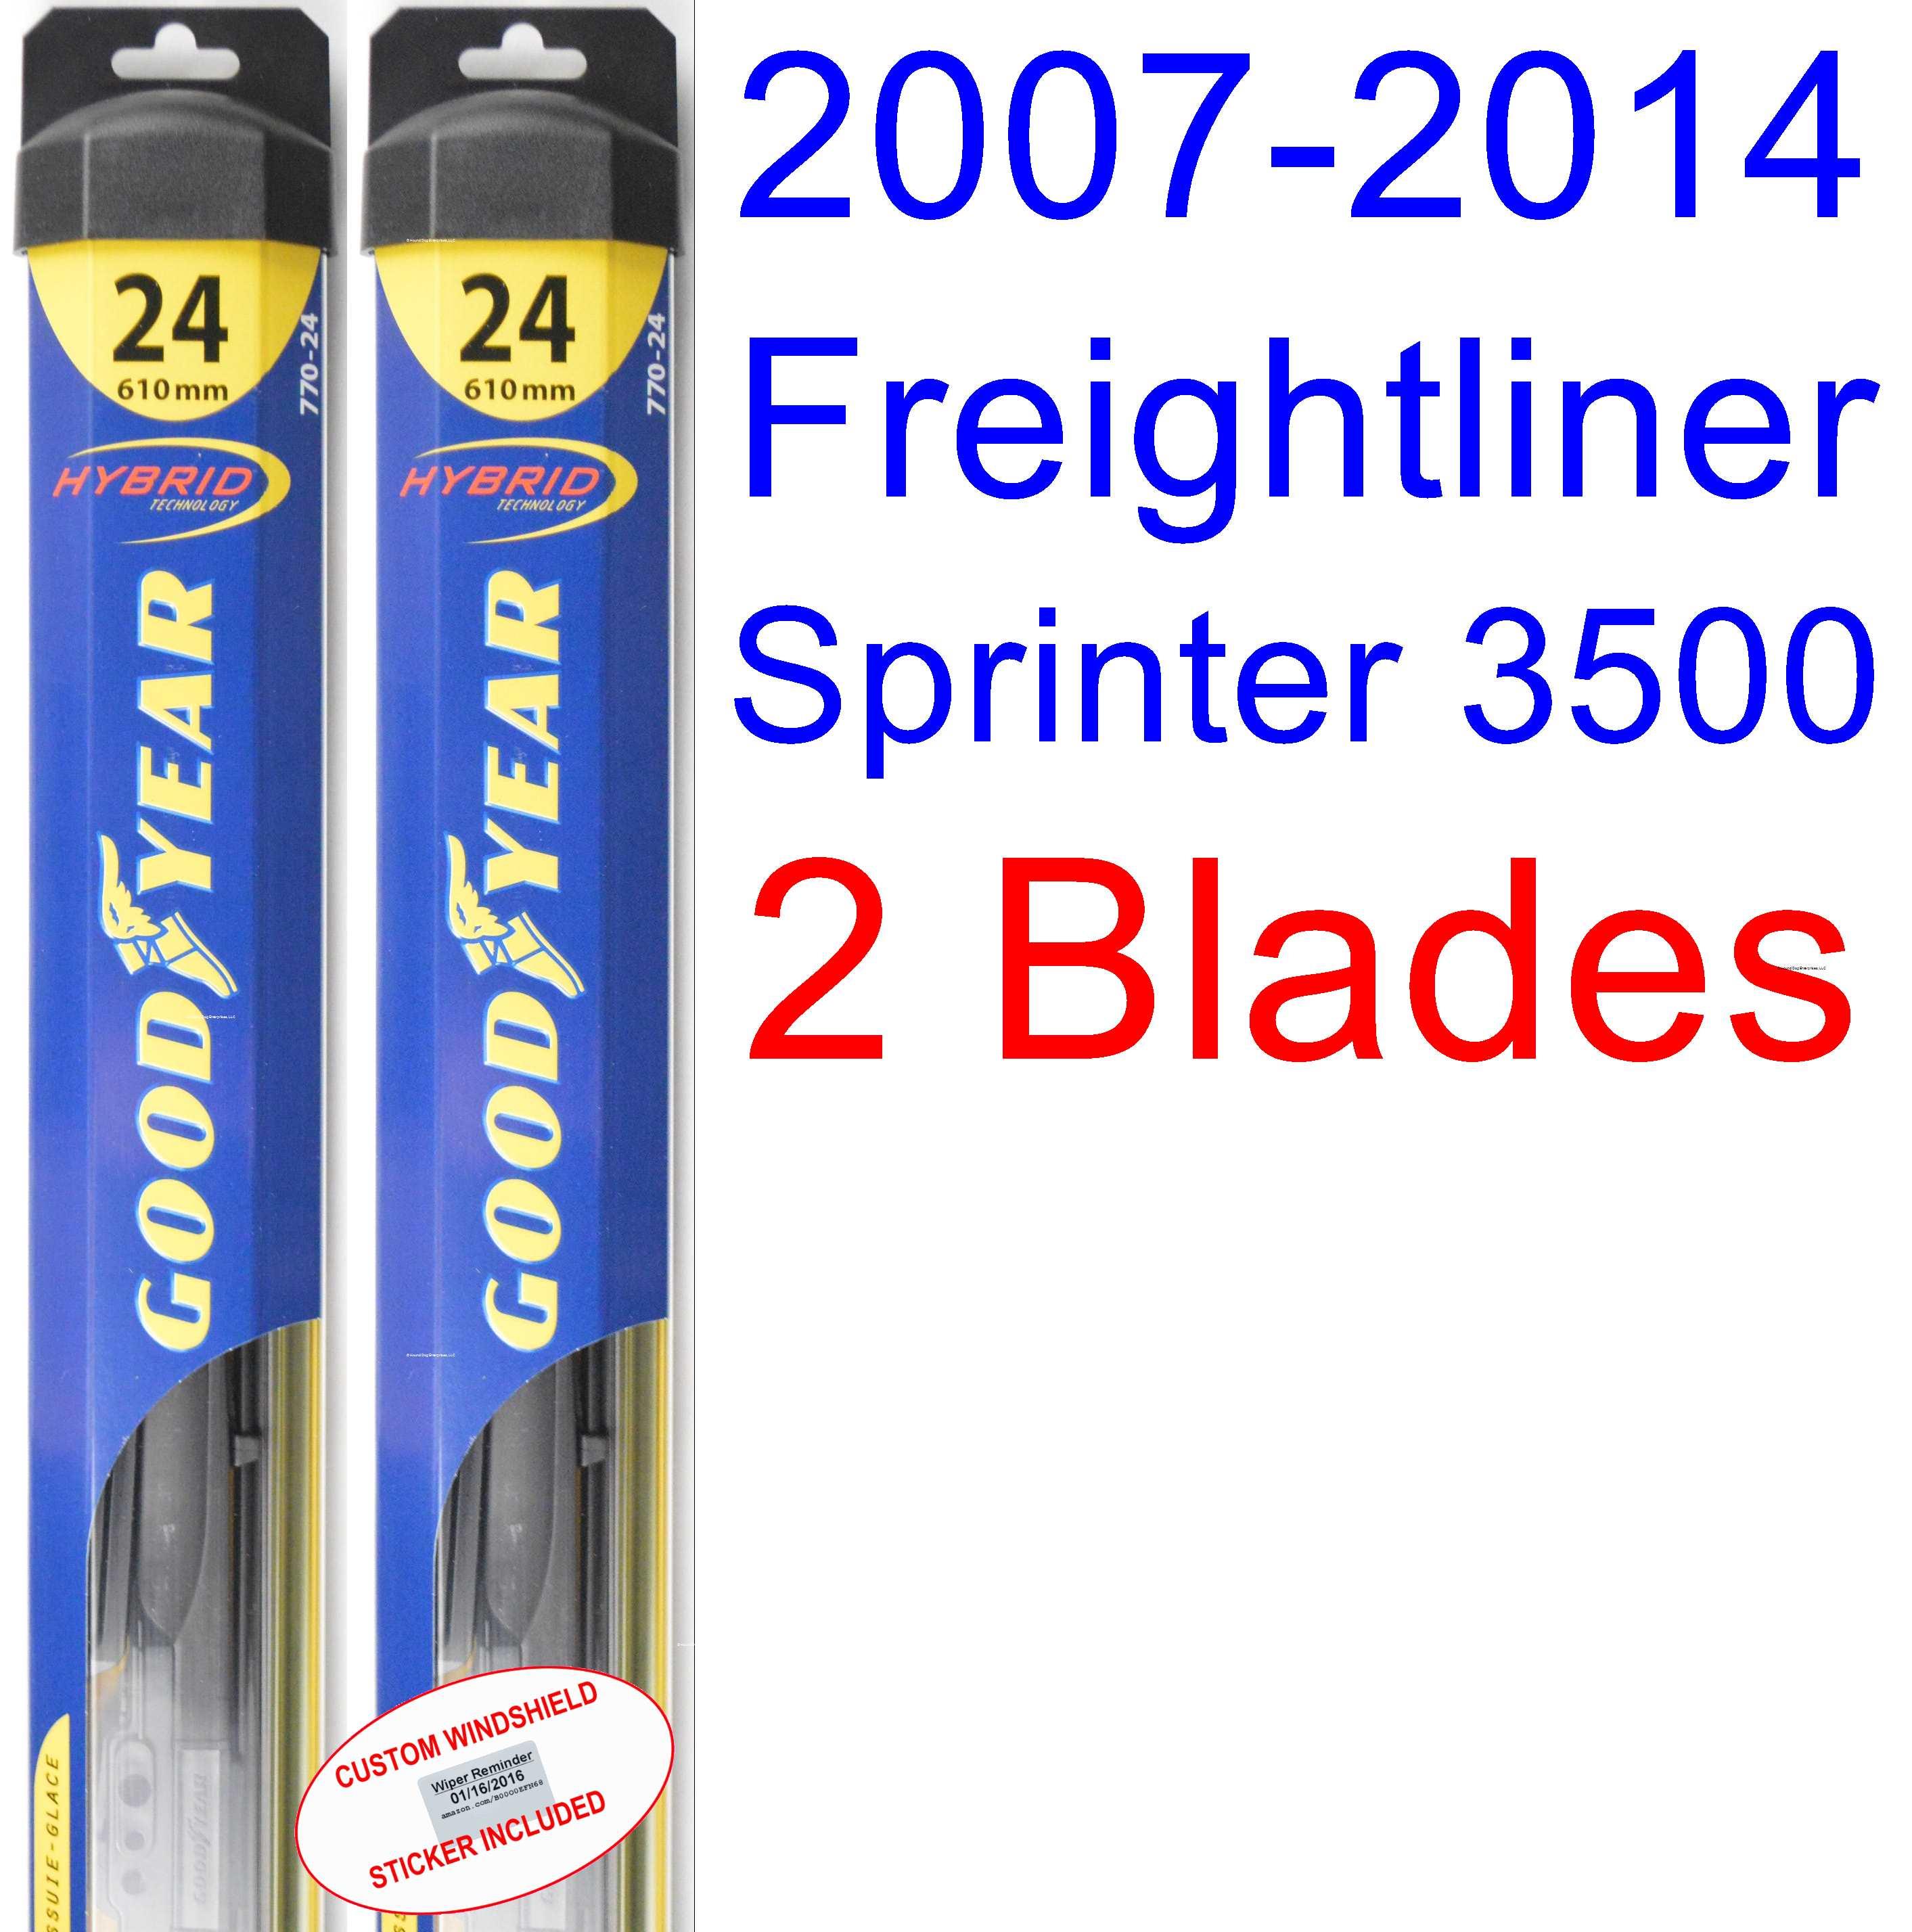 2007 2014 Freightliner Sprinter 3500 Replacement Wiper Blade Set/Kit (Set of 2 Blades) (Goodyear Wiper Blades Hybrid) (2008,2009,2010,2011,2012,2013)